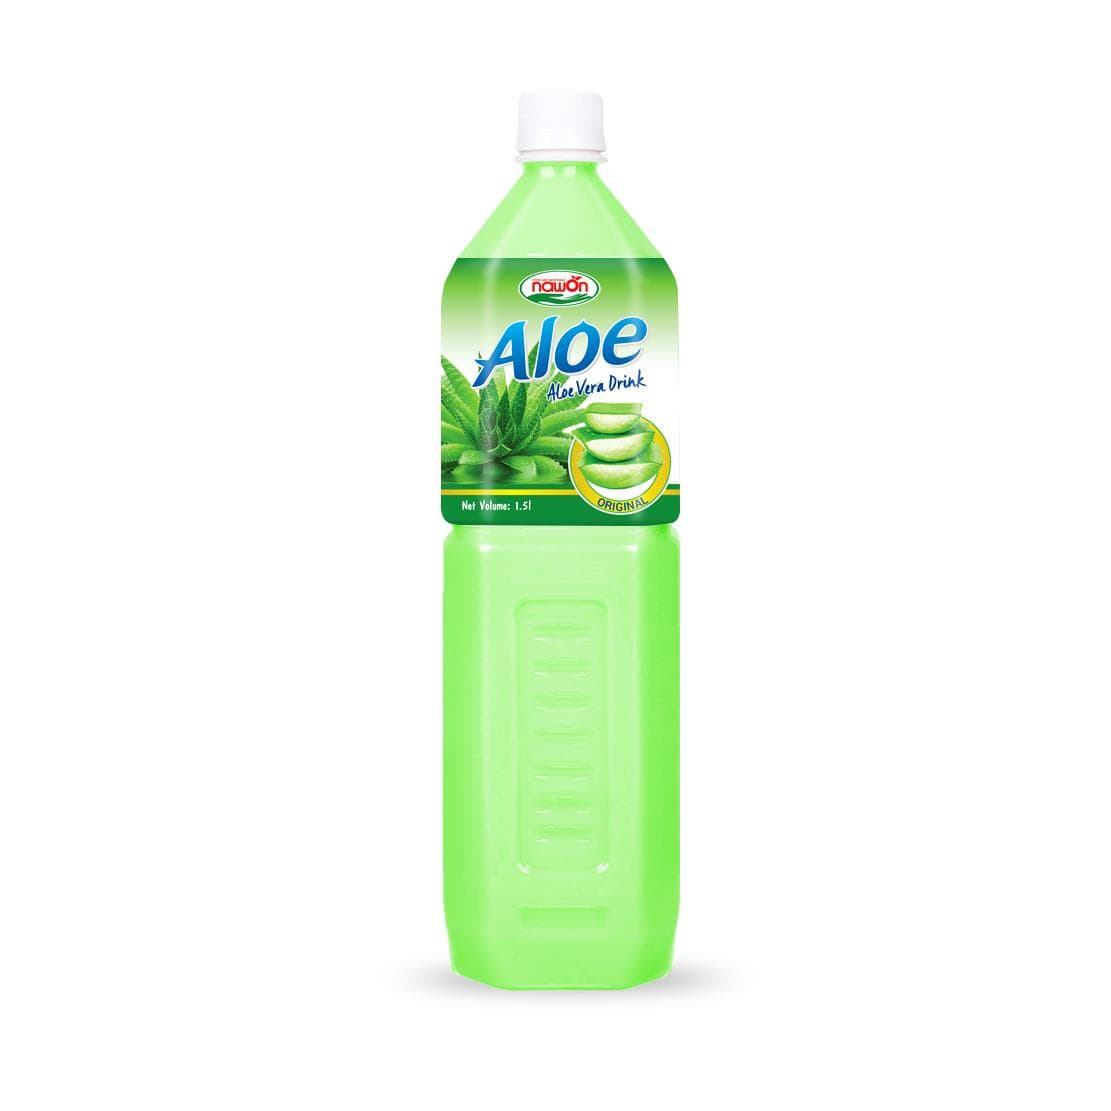 Aloe vera drink with Original 1L